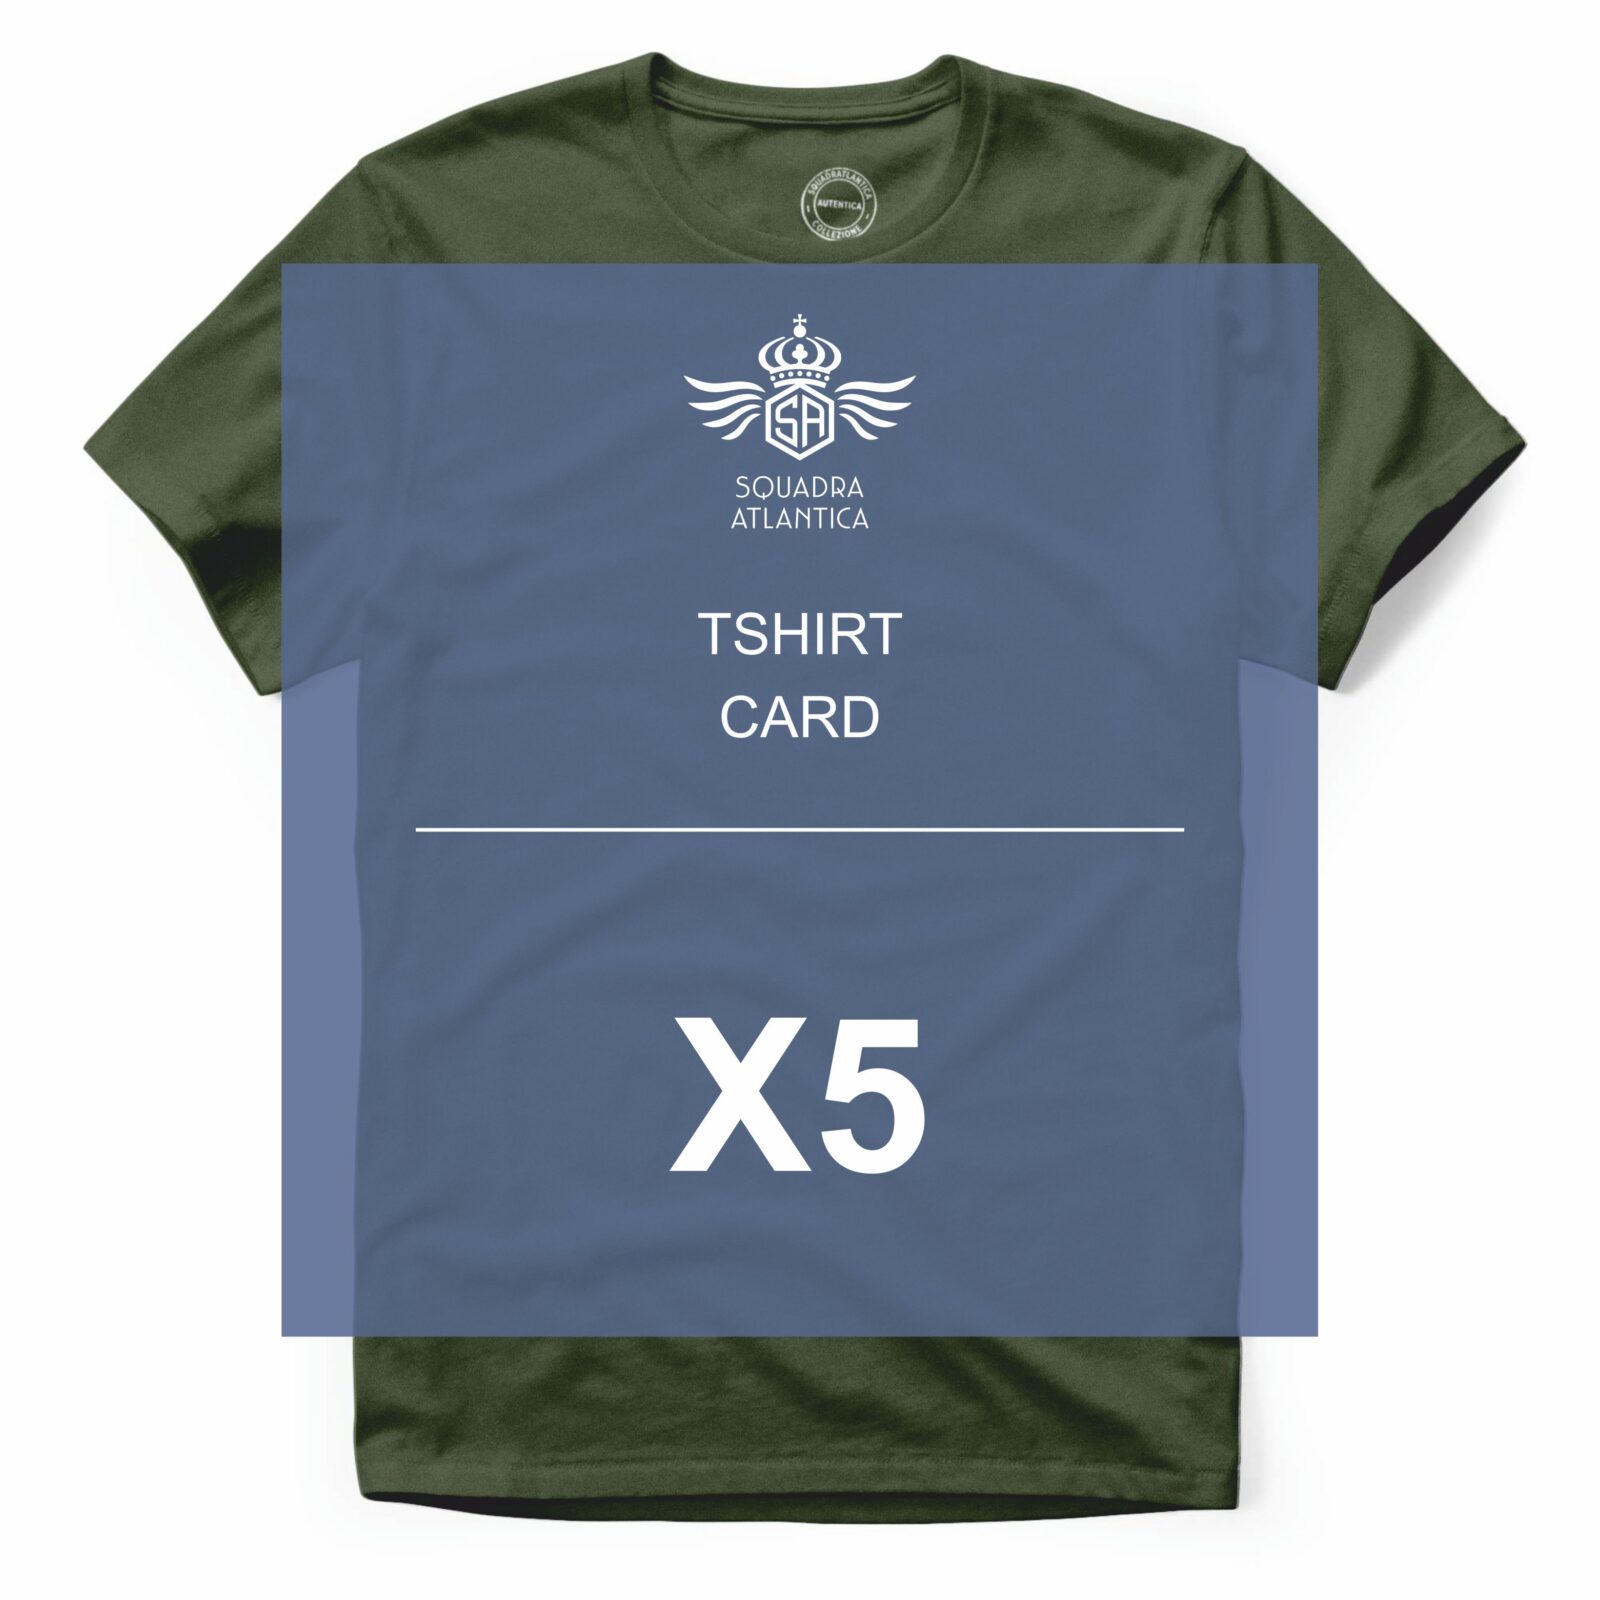 TSHIRT CARD X5 Squadratlantica